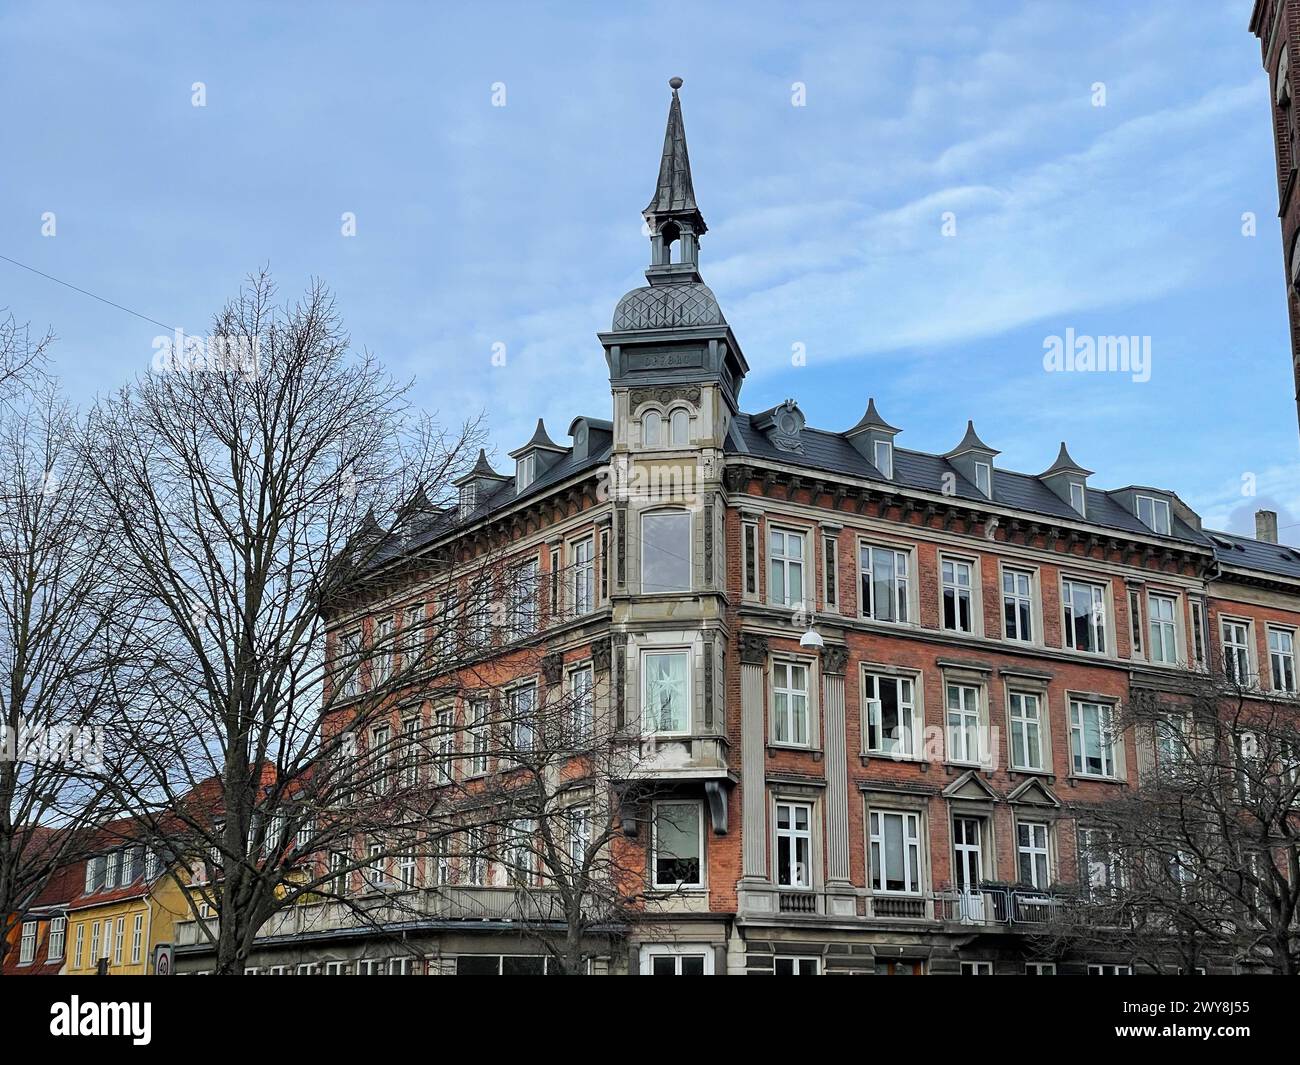 Immeuble d'appartements, historique, architecture, Copenhague, Danemark Banque D'Images